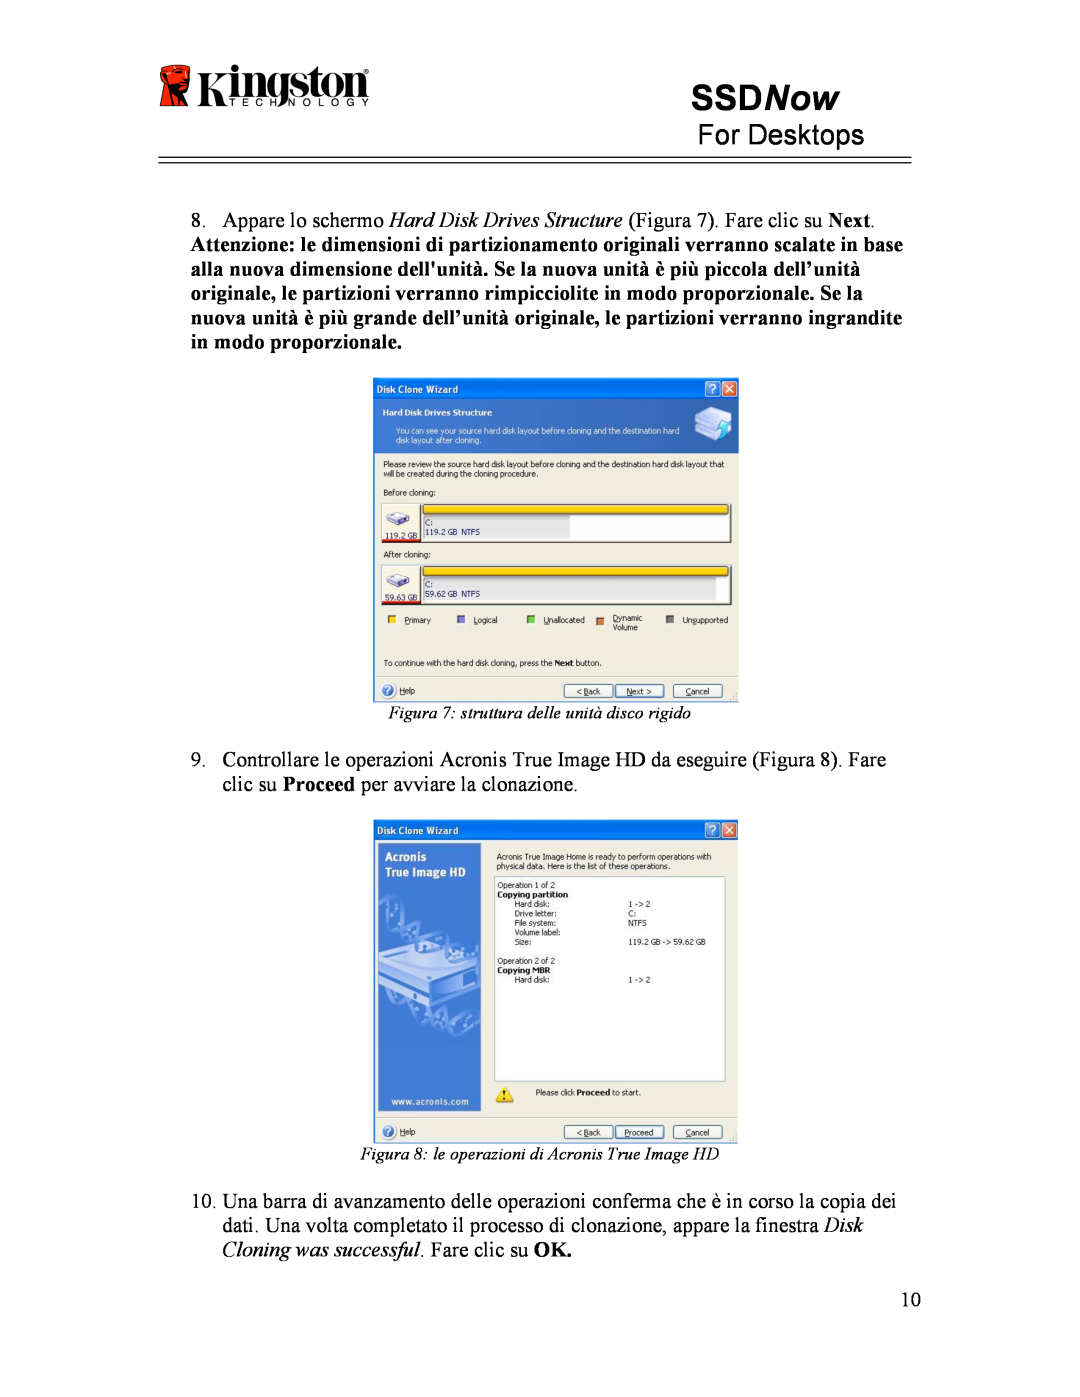 Kingston Technology 07-16-2009 manual SSDNow, For Desktops, Figura 7 struttura delle unità disco rigido 